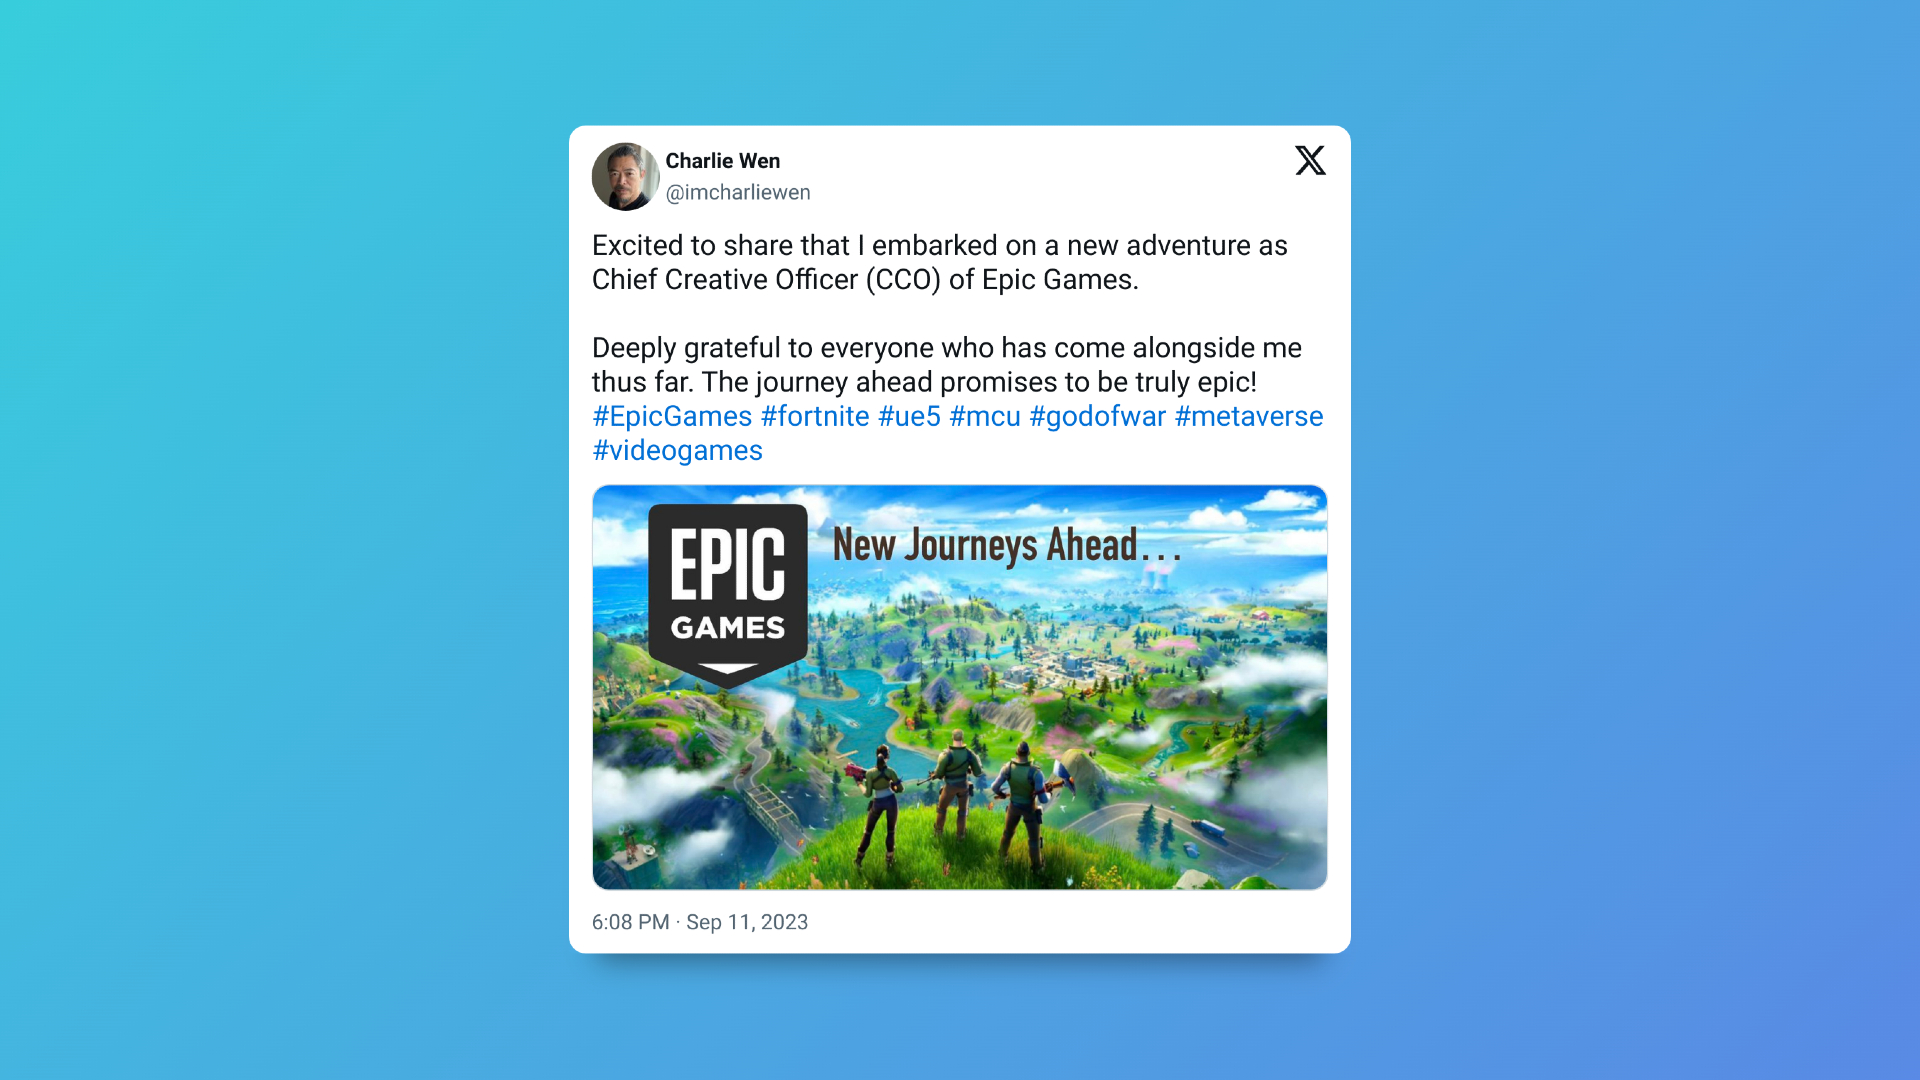 Article de Charlie Wen détaillant comment il rejoint Epic Games en tant que nouveau CCO